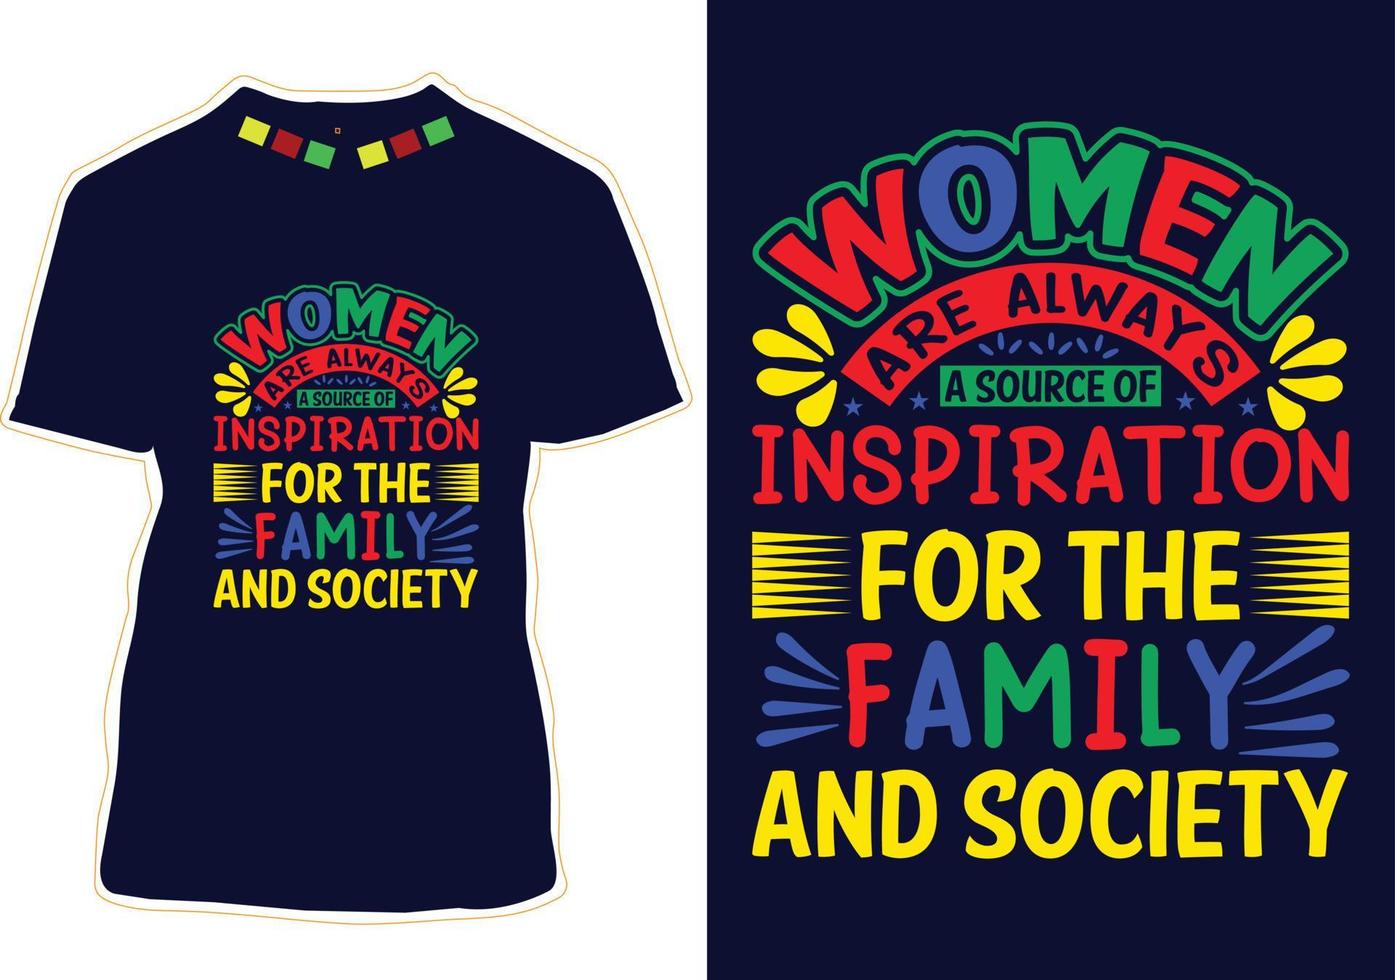 Women's Day T-shirt Design vector